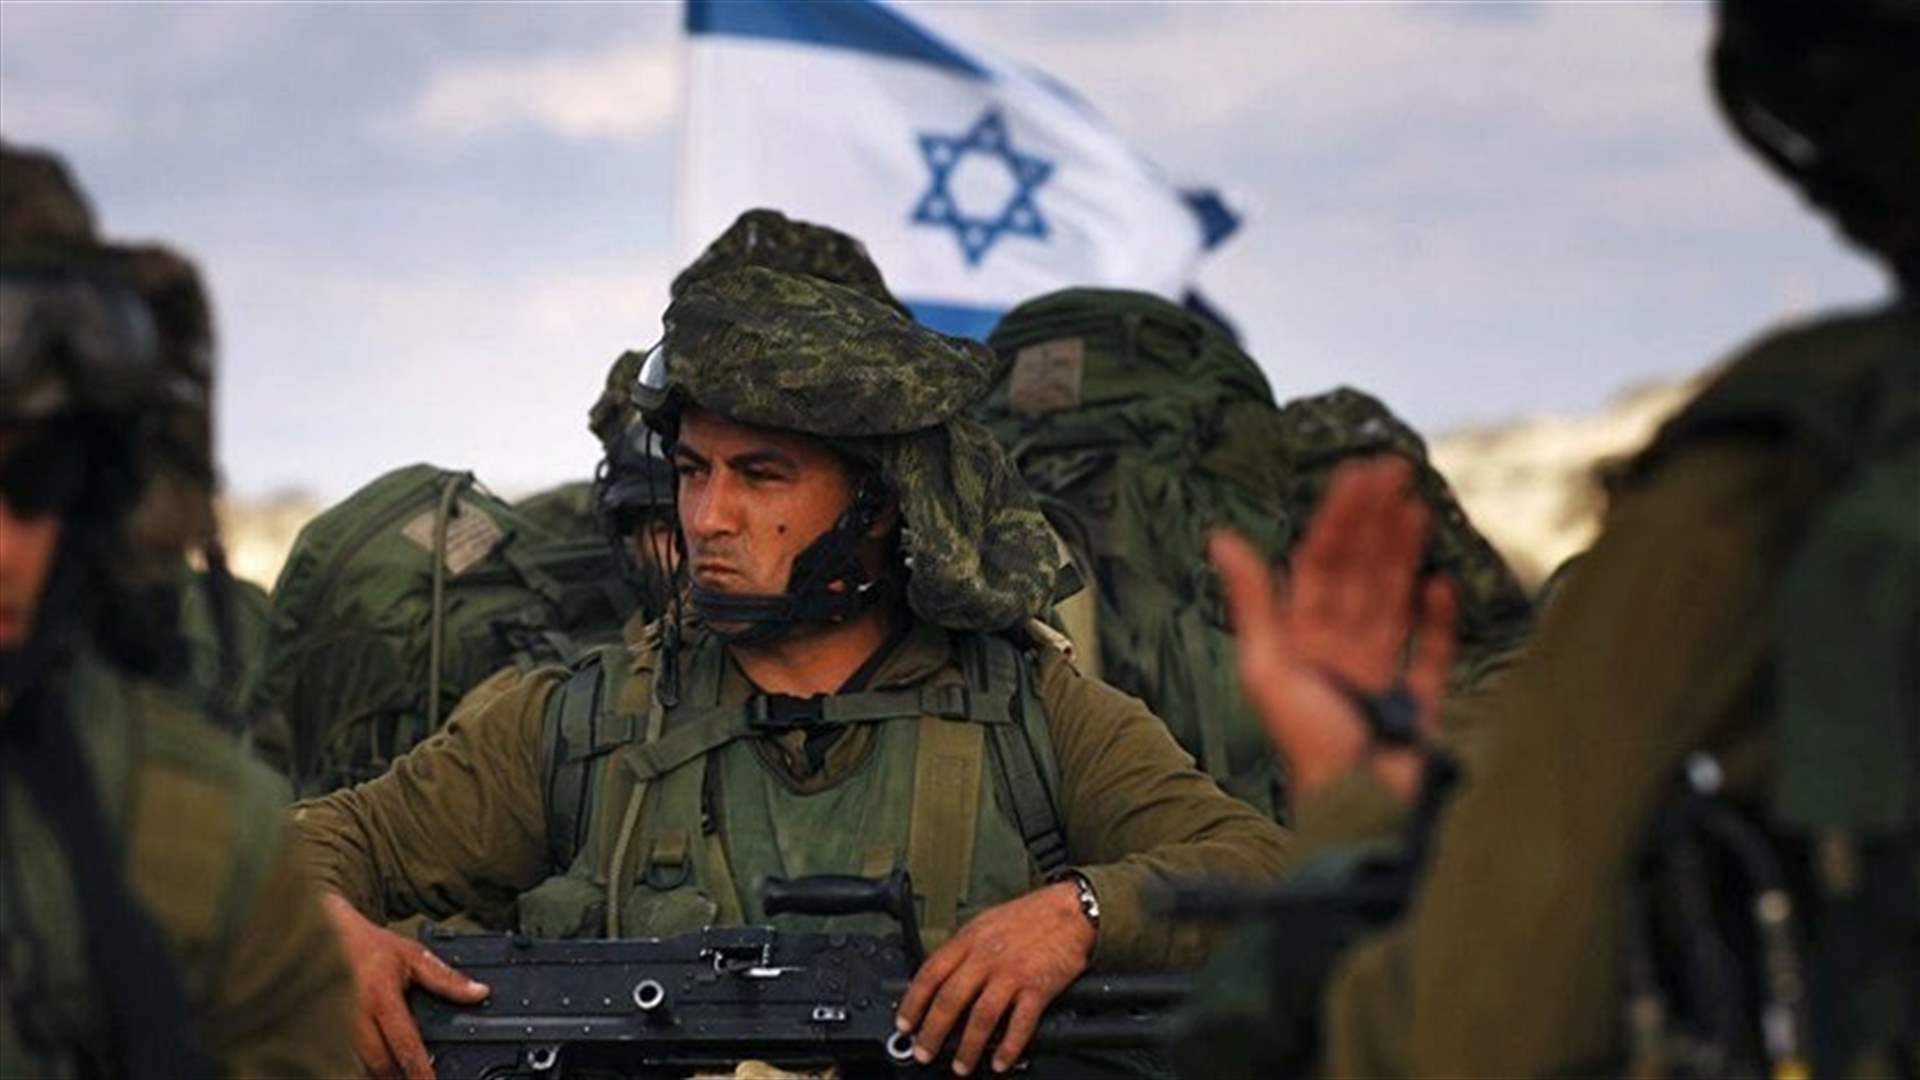 الجيش الإسرائيلي: القوات البرية تقوم بعملية في منطقة البريج بوسط قطاع غزة